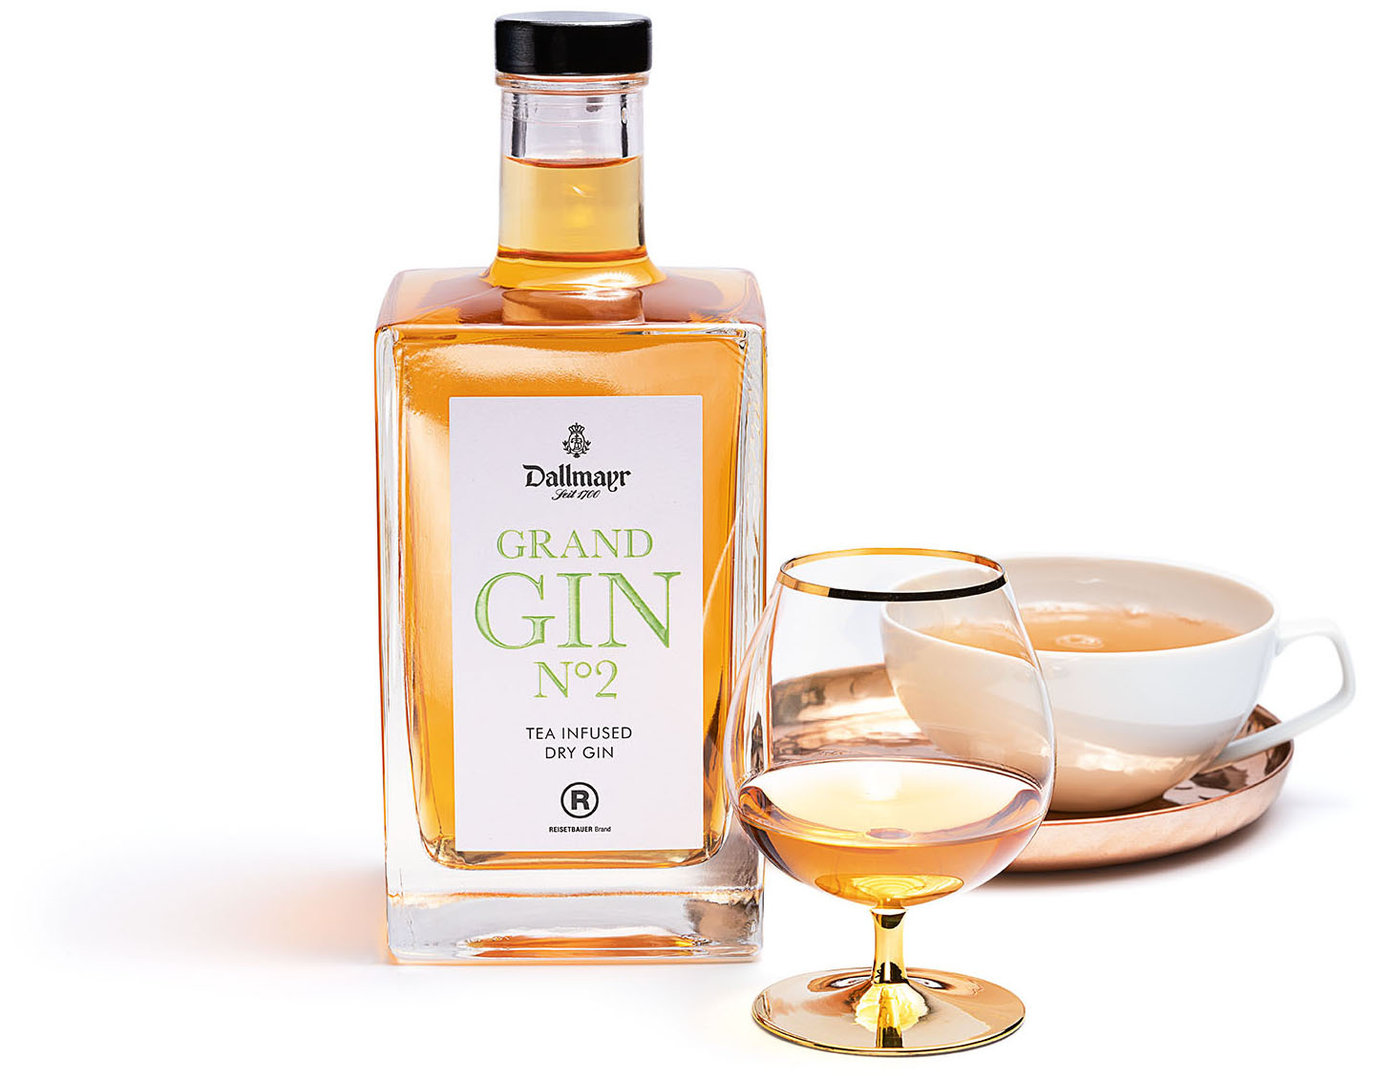 Image of Dallmayr Grand Gin N° 2